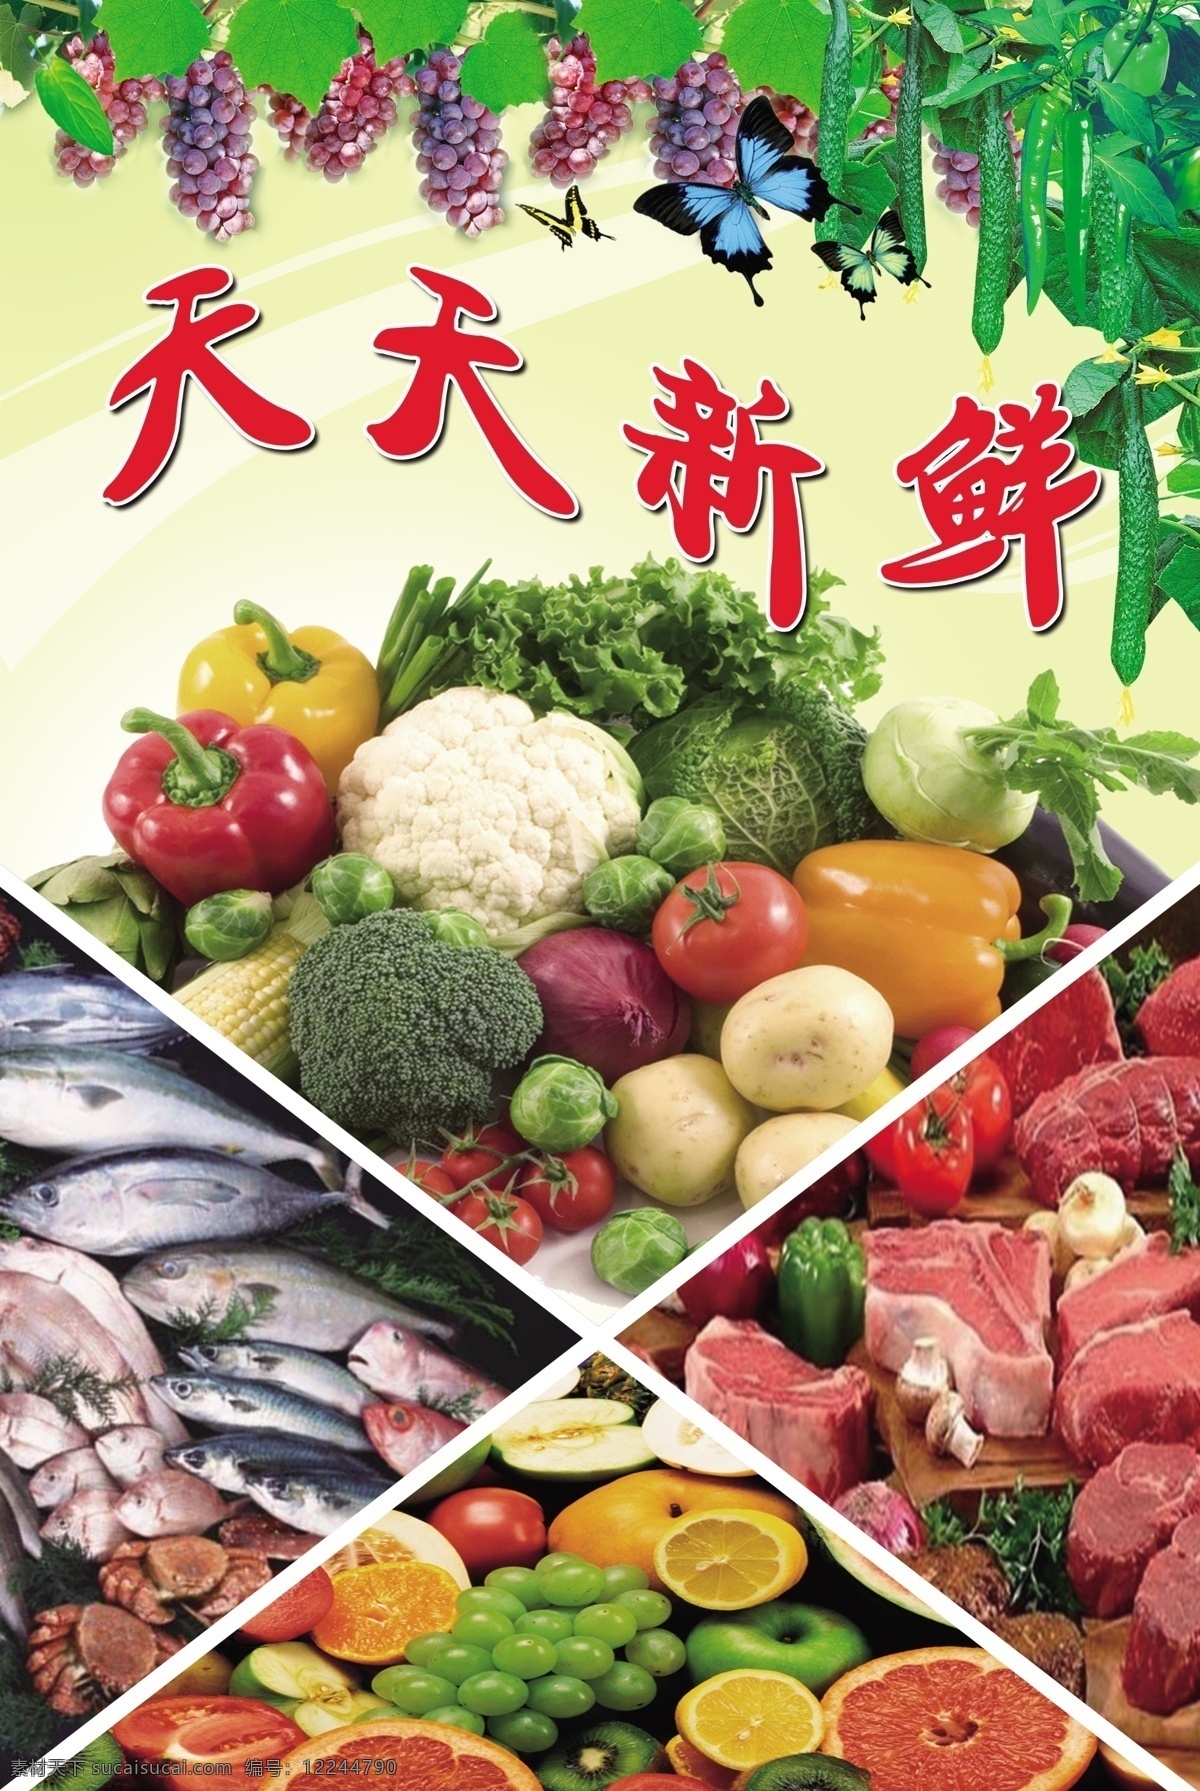 新鲜果蔬 水果 蔬菜 肉类 海鲜 水产 海产品 鱼类 黄瓜 葡萄 生鲜 超市 食材 天天新鲜 新鲜 果蔬 鲜艳 食品区